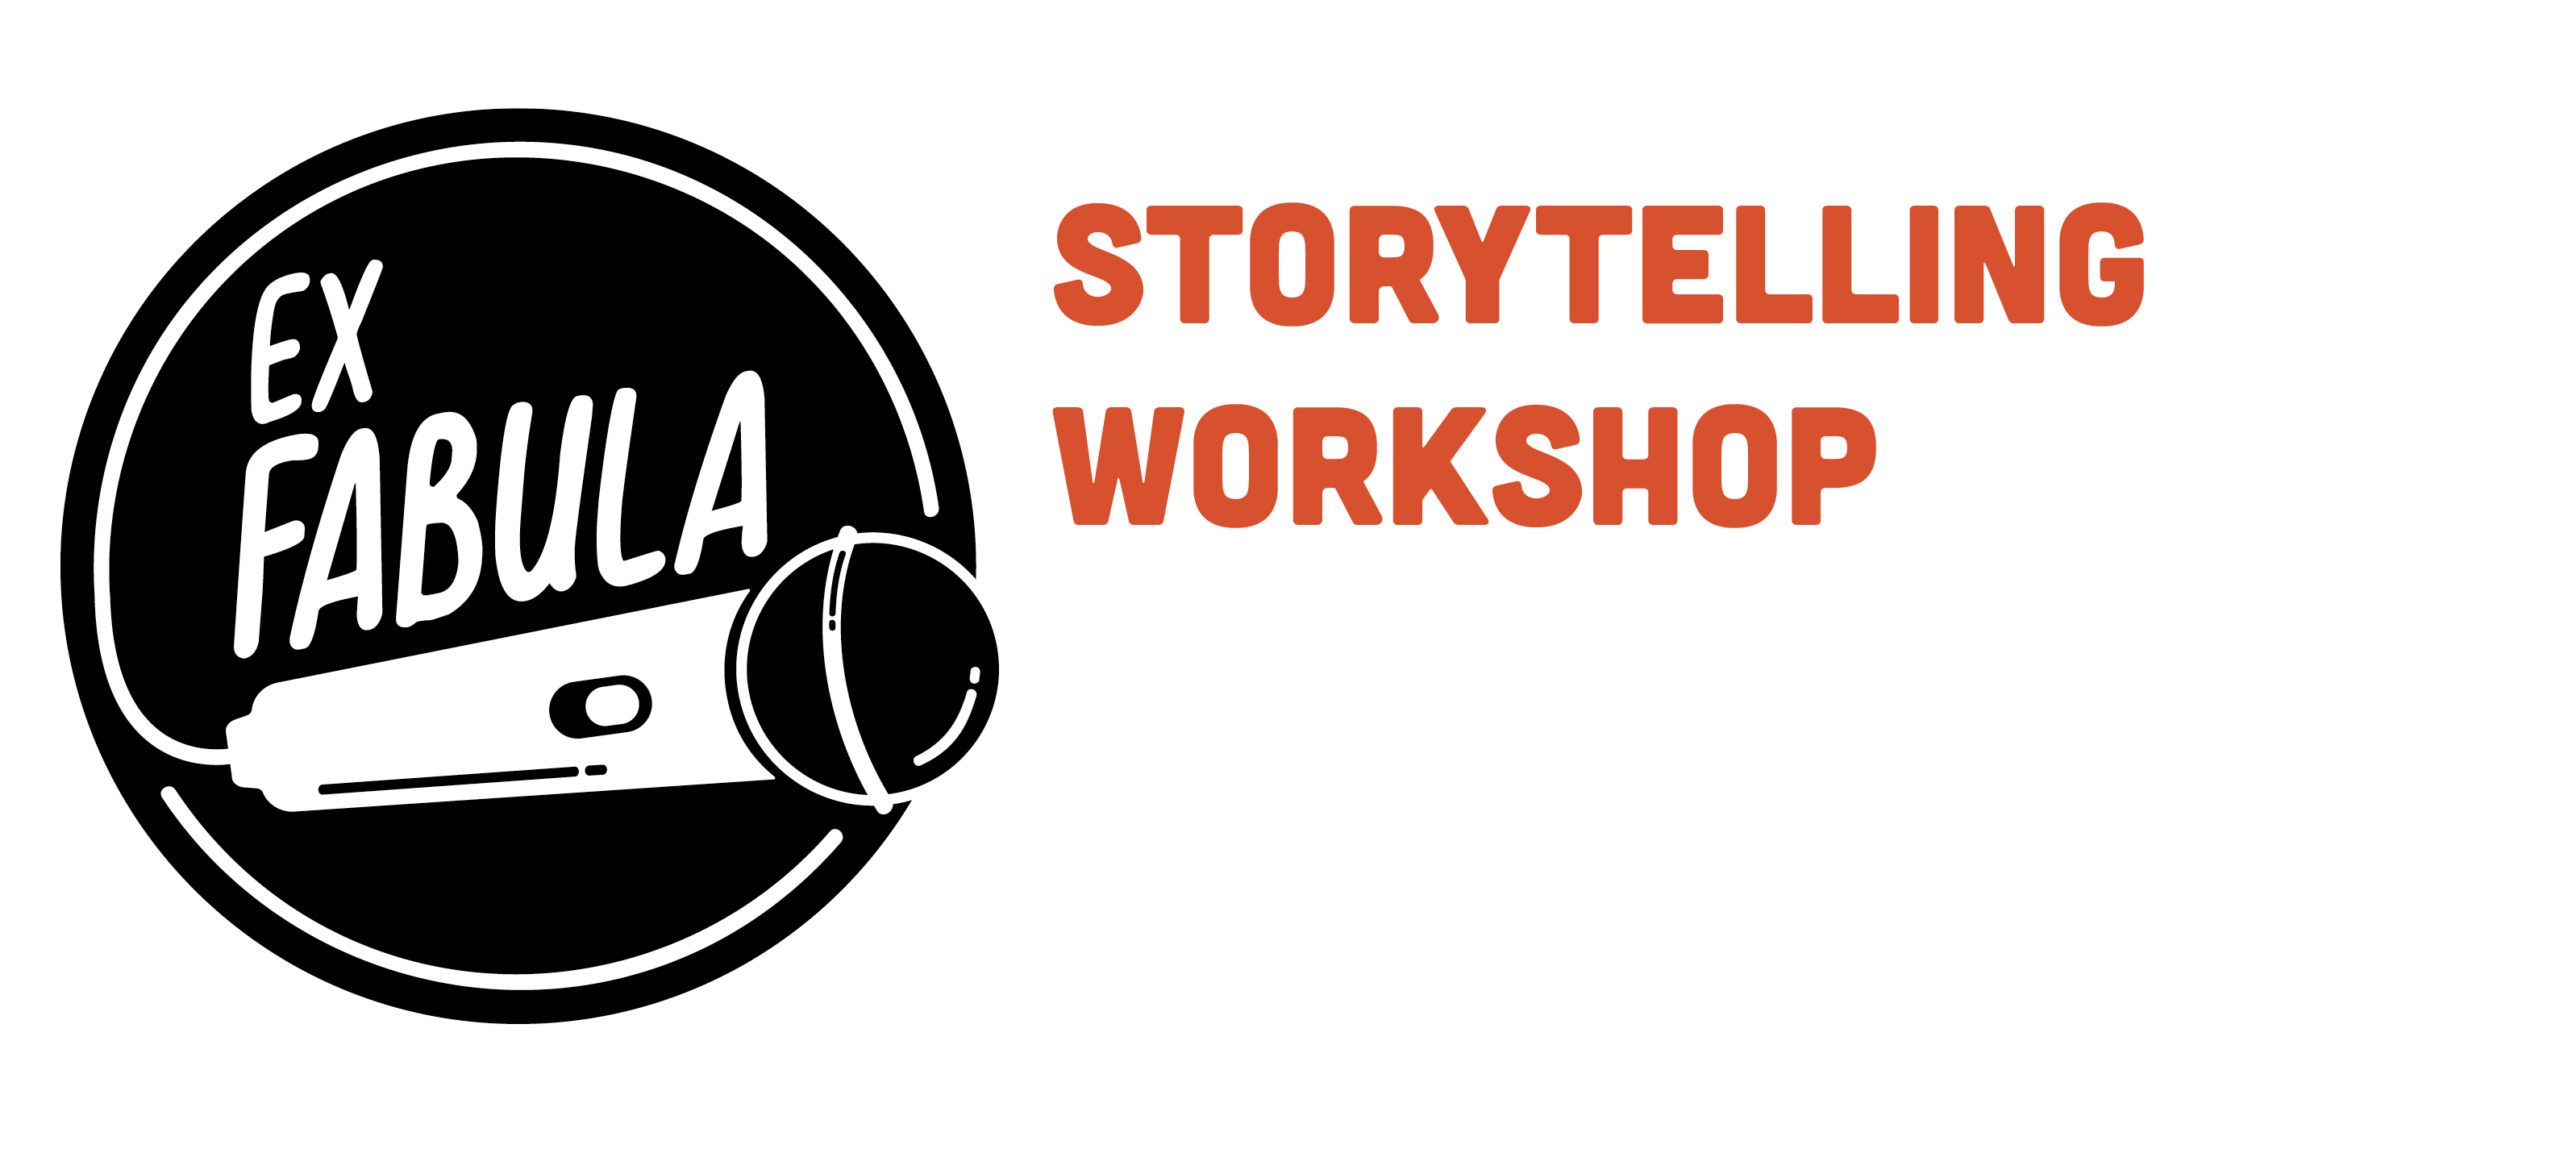 Storytelling workshop